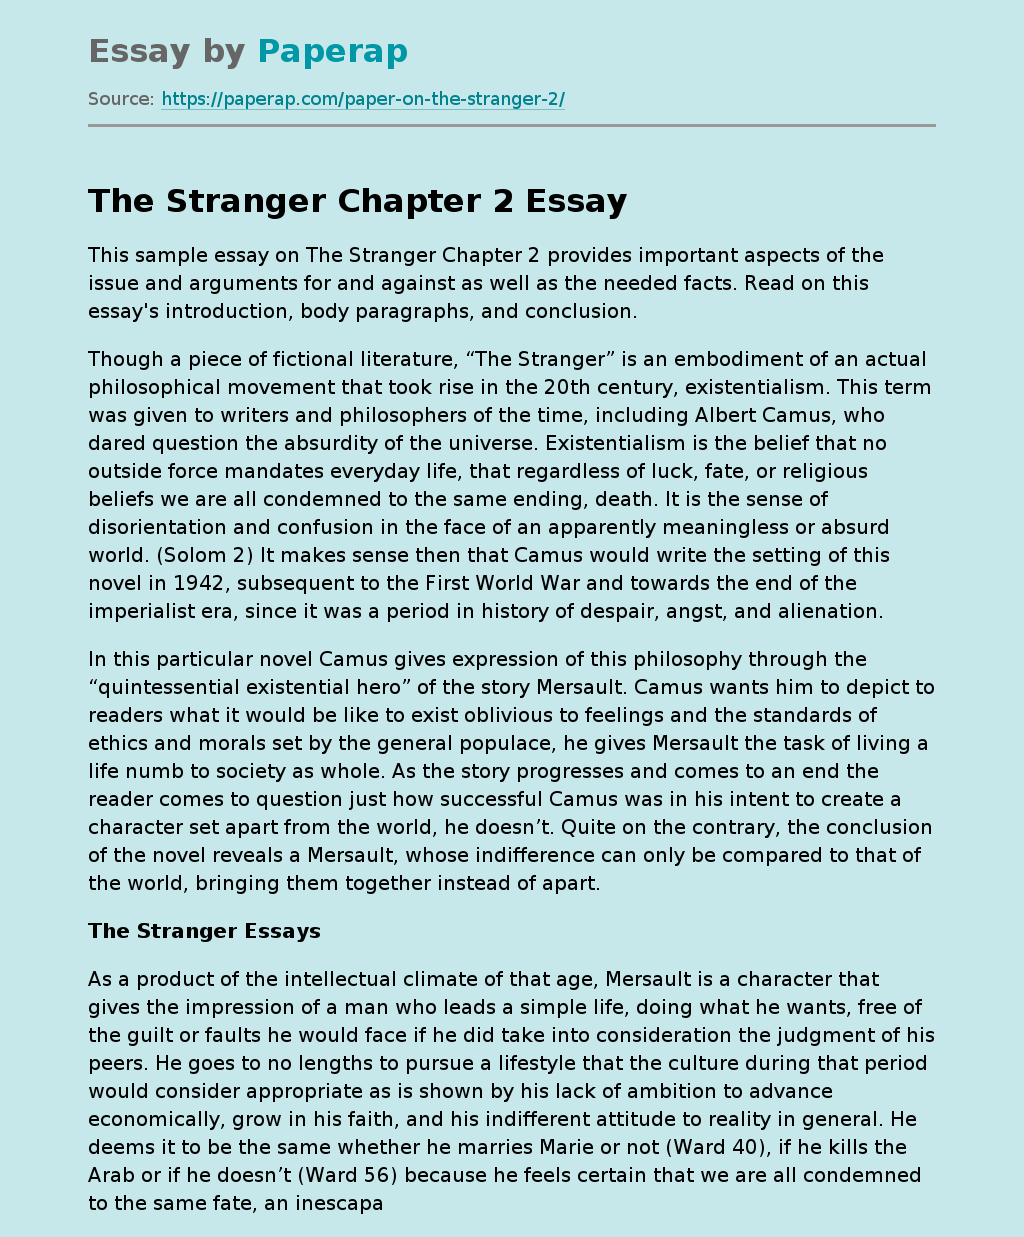 "The Stranger" Chapter 2